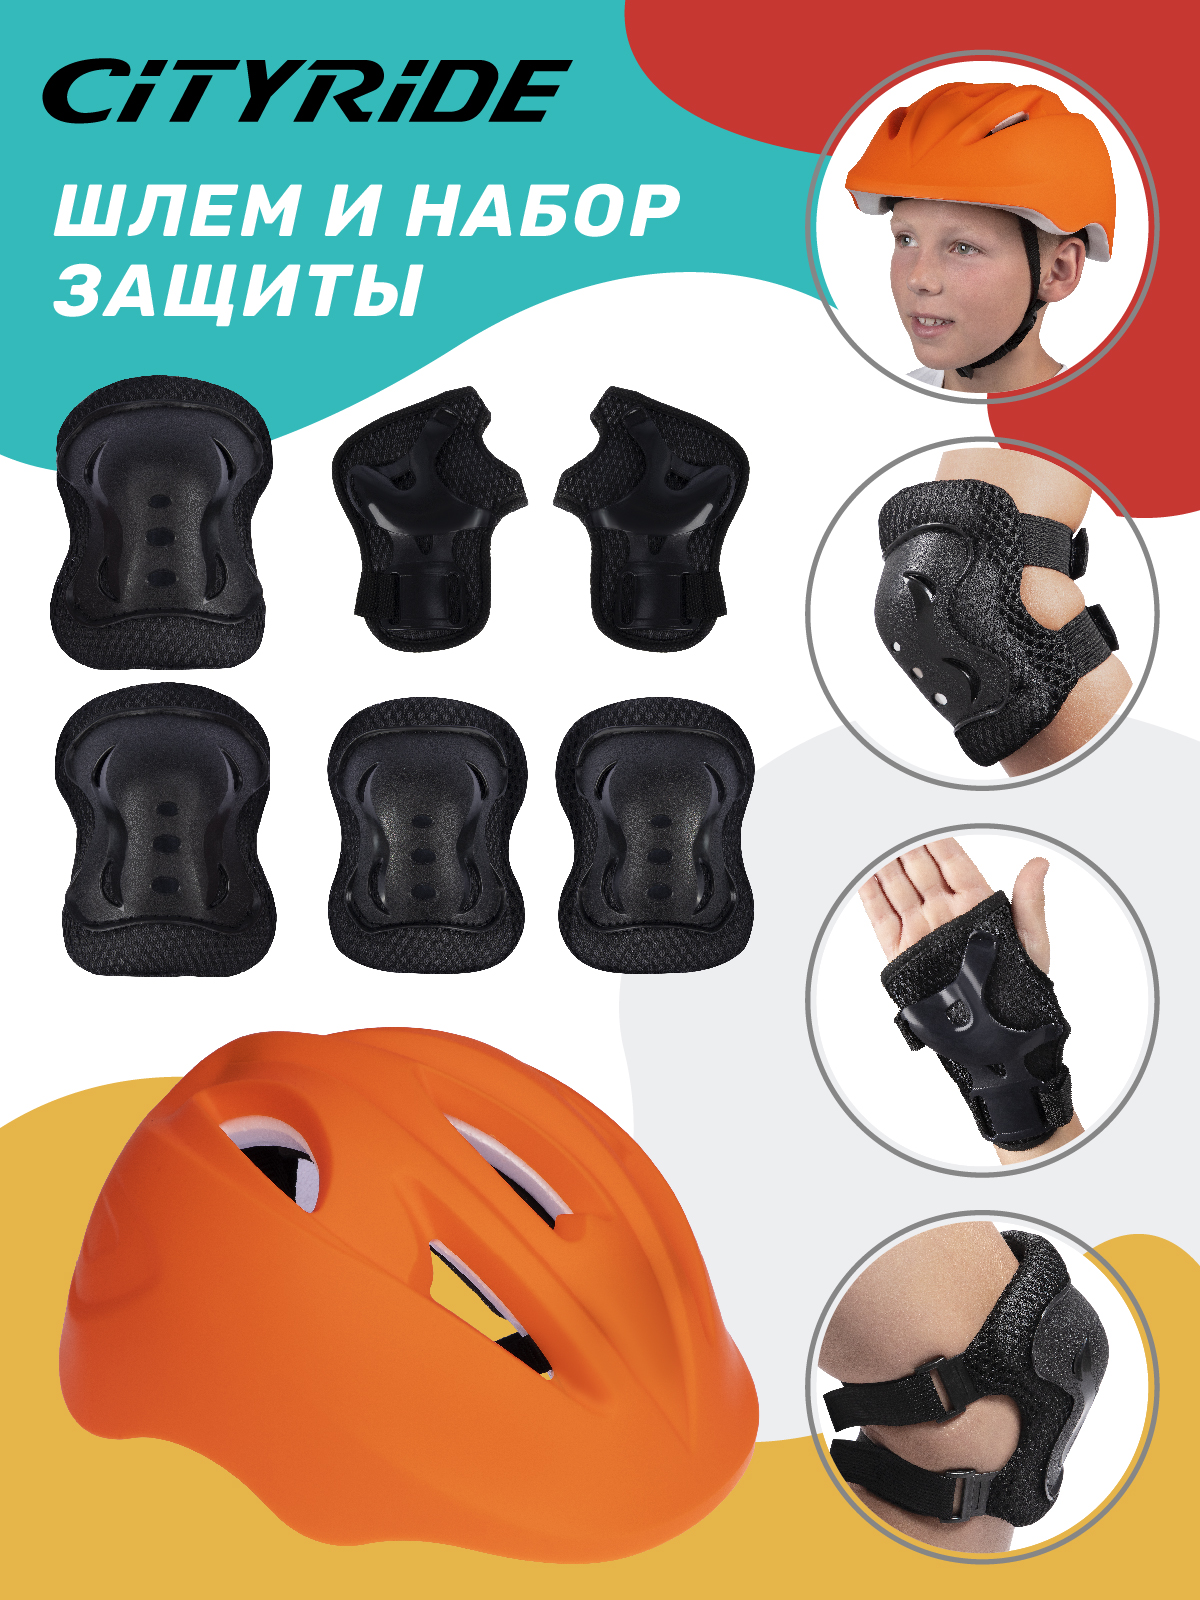 Комплект шлем, спортивная защита для детей ТМ City Ride, размер универсальный, JB0211562 набор детские роликовые коньки защита city ride pvc s р 29 33 раздвижные jb0210513